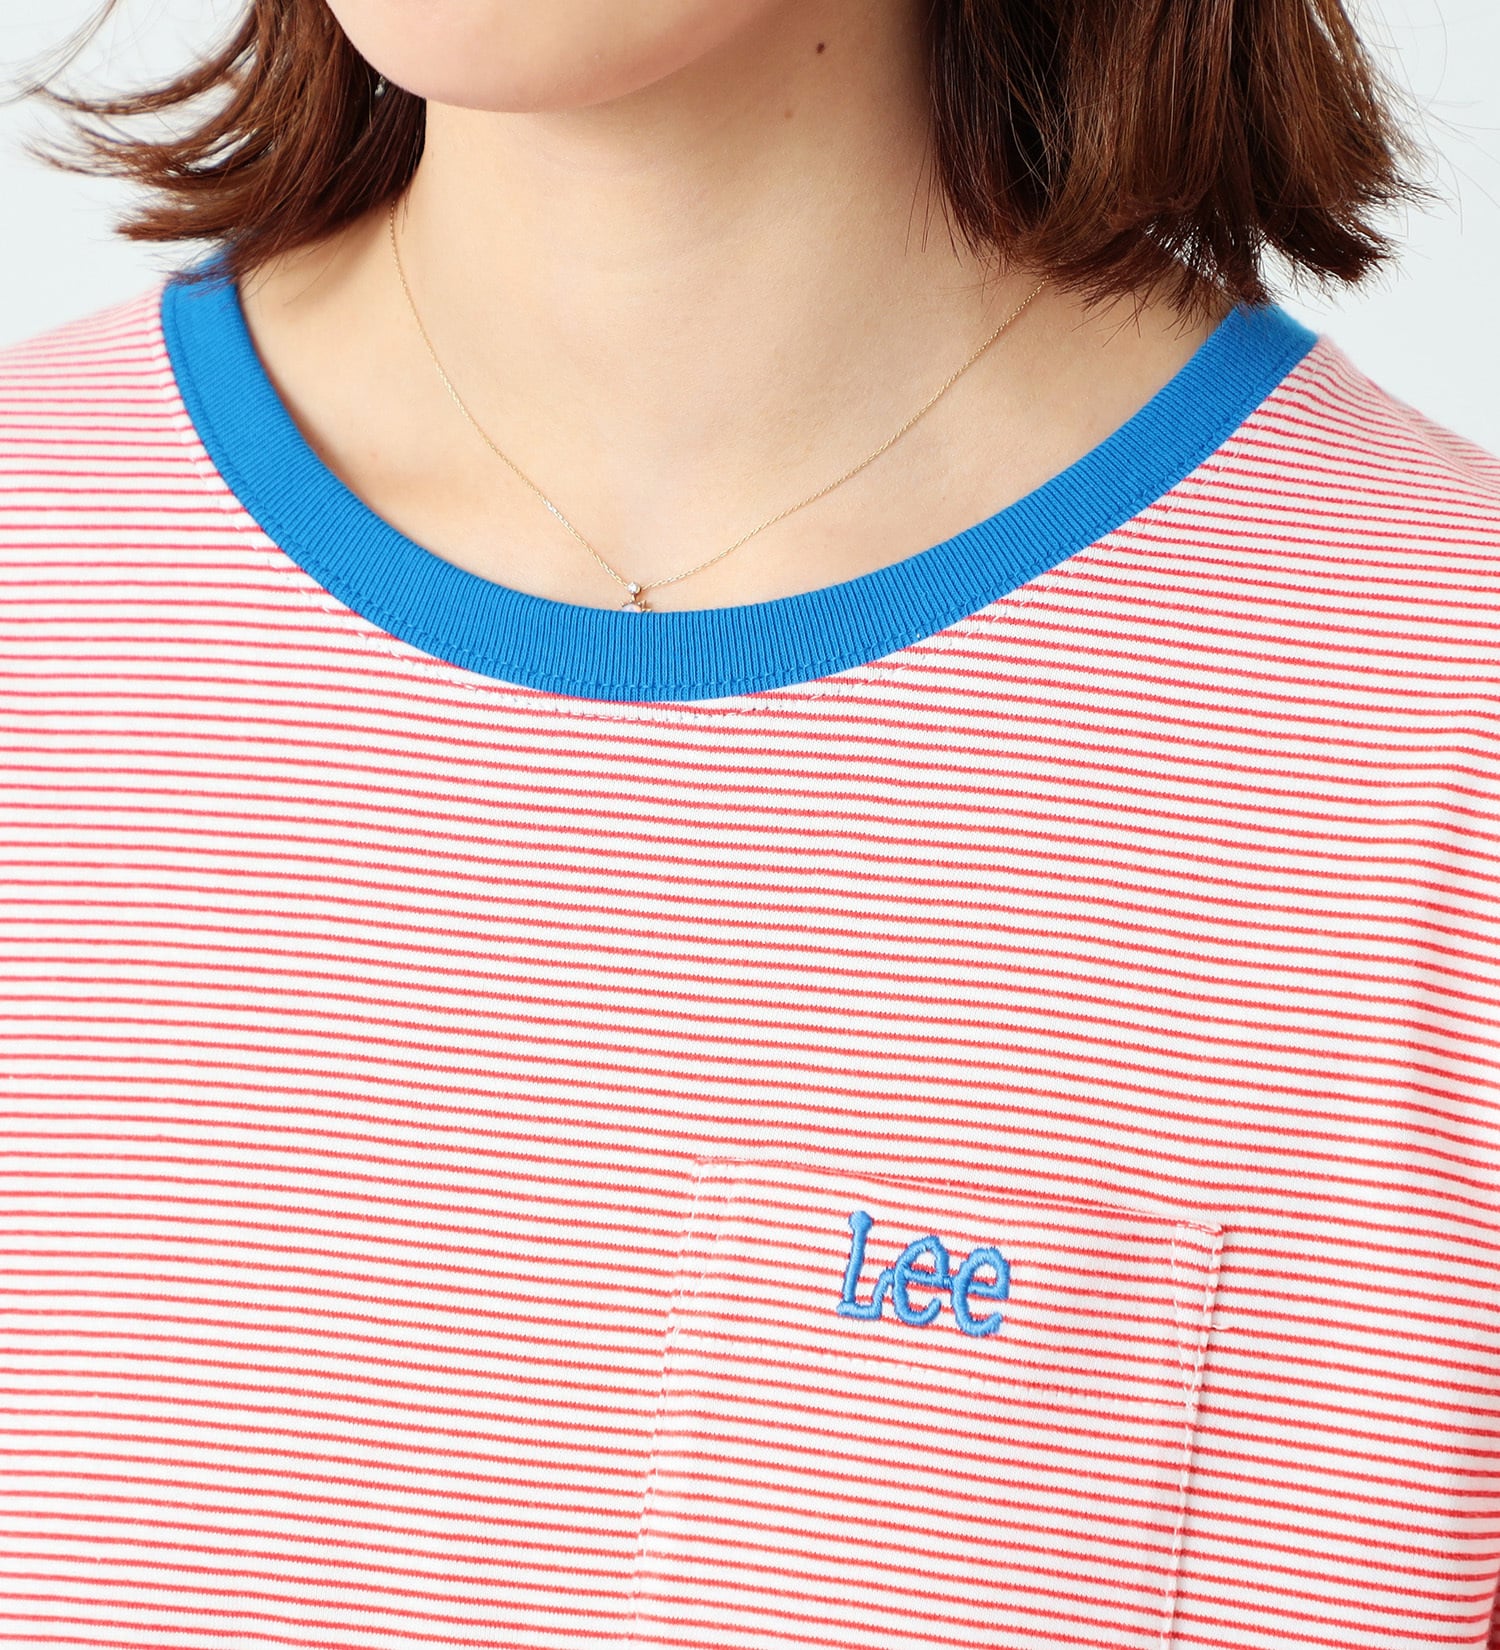 Lee(リー)のポケットロゴ刺繍 ハーフスリーブTee|トップス/Tシャツ/カットソー/レディース|ホワイトxレッド